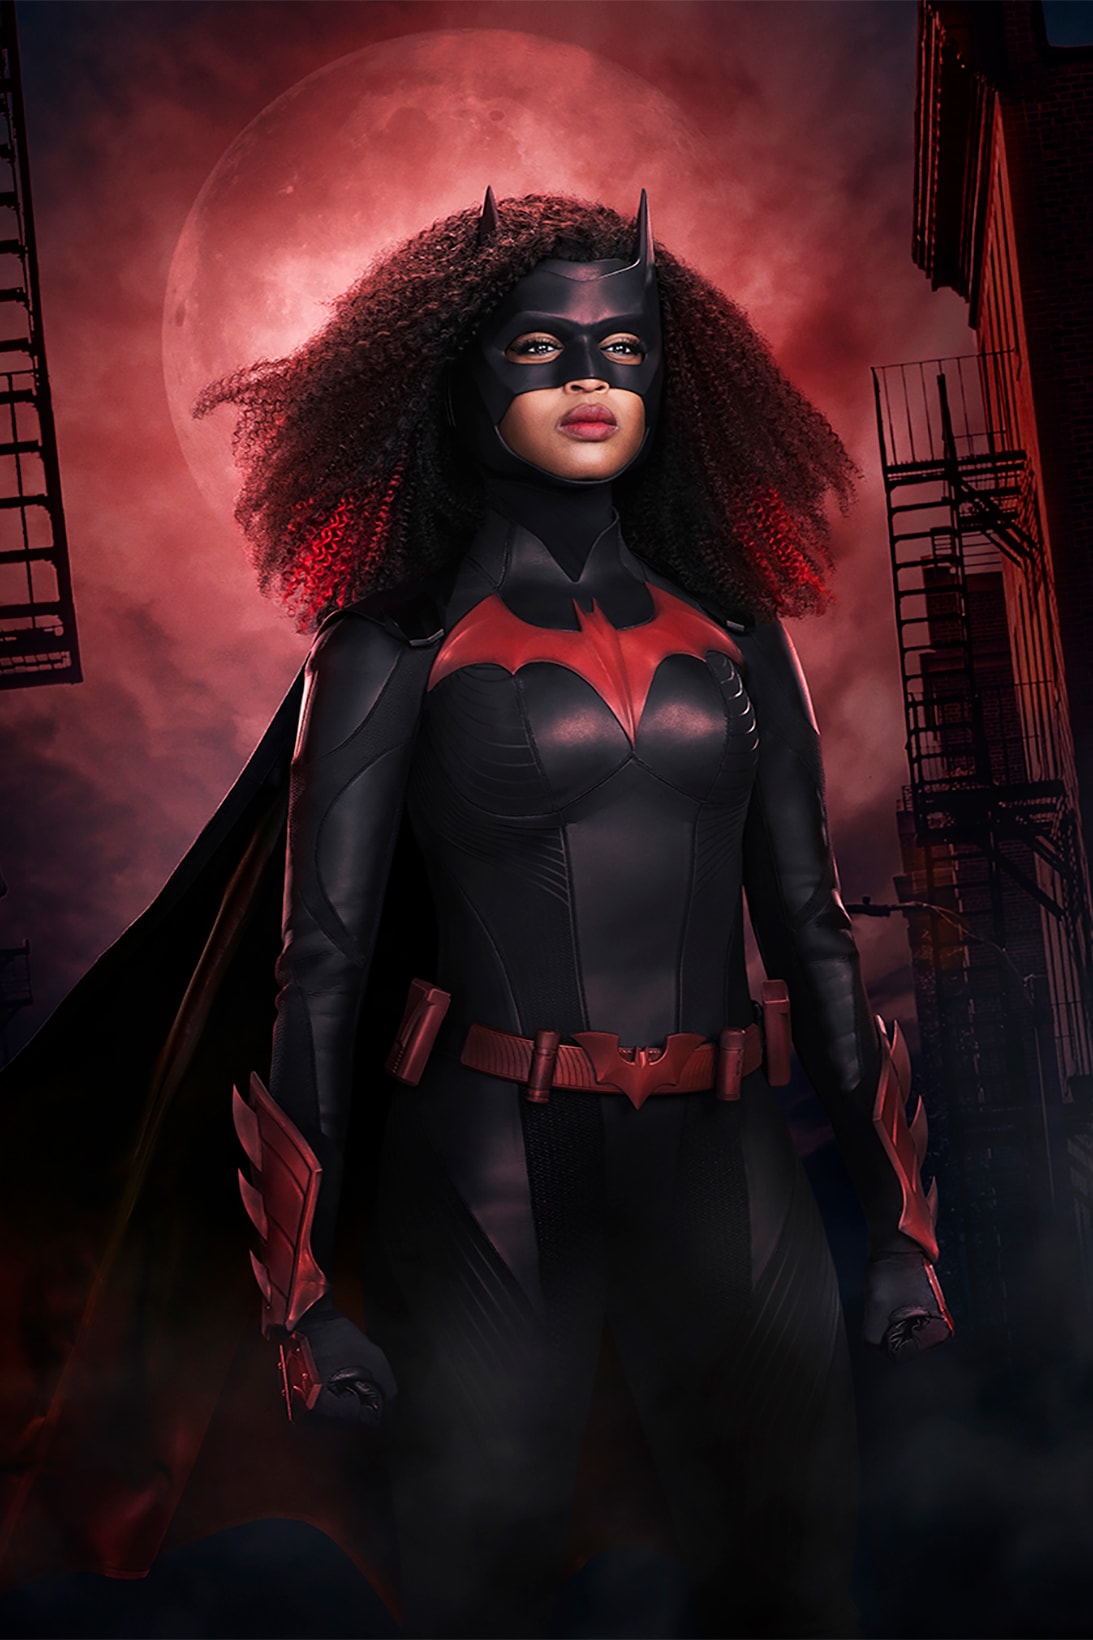 batwoman javicia leslie cast lead role the cw tv show black lgbtq actress